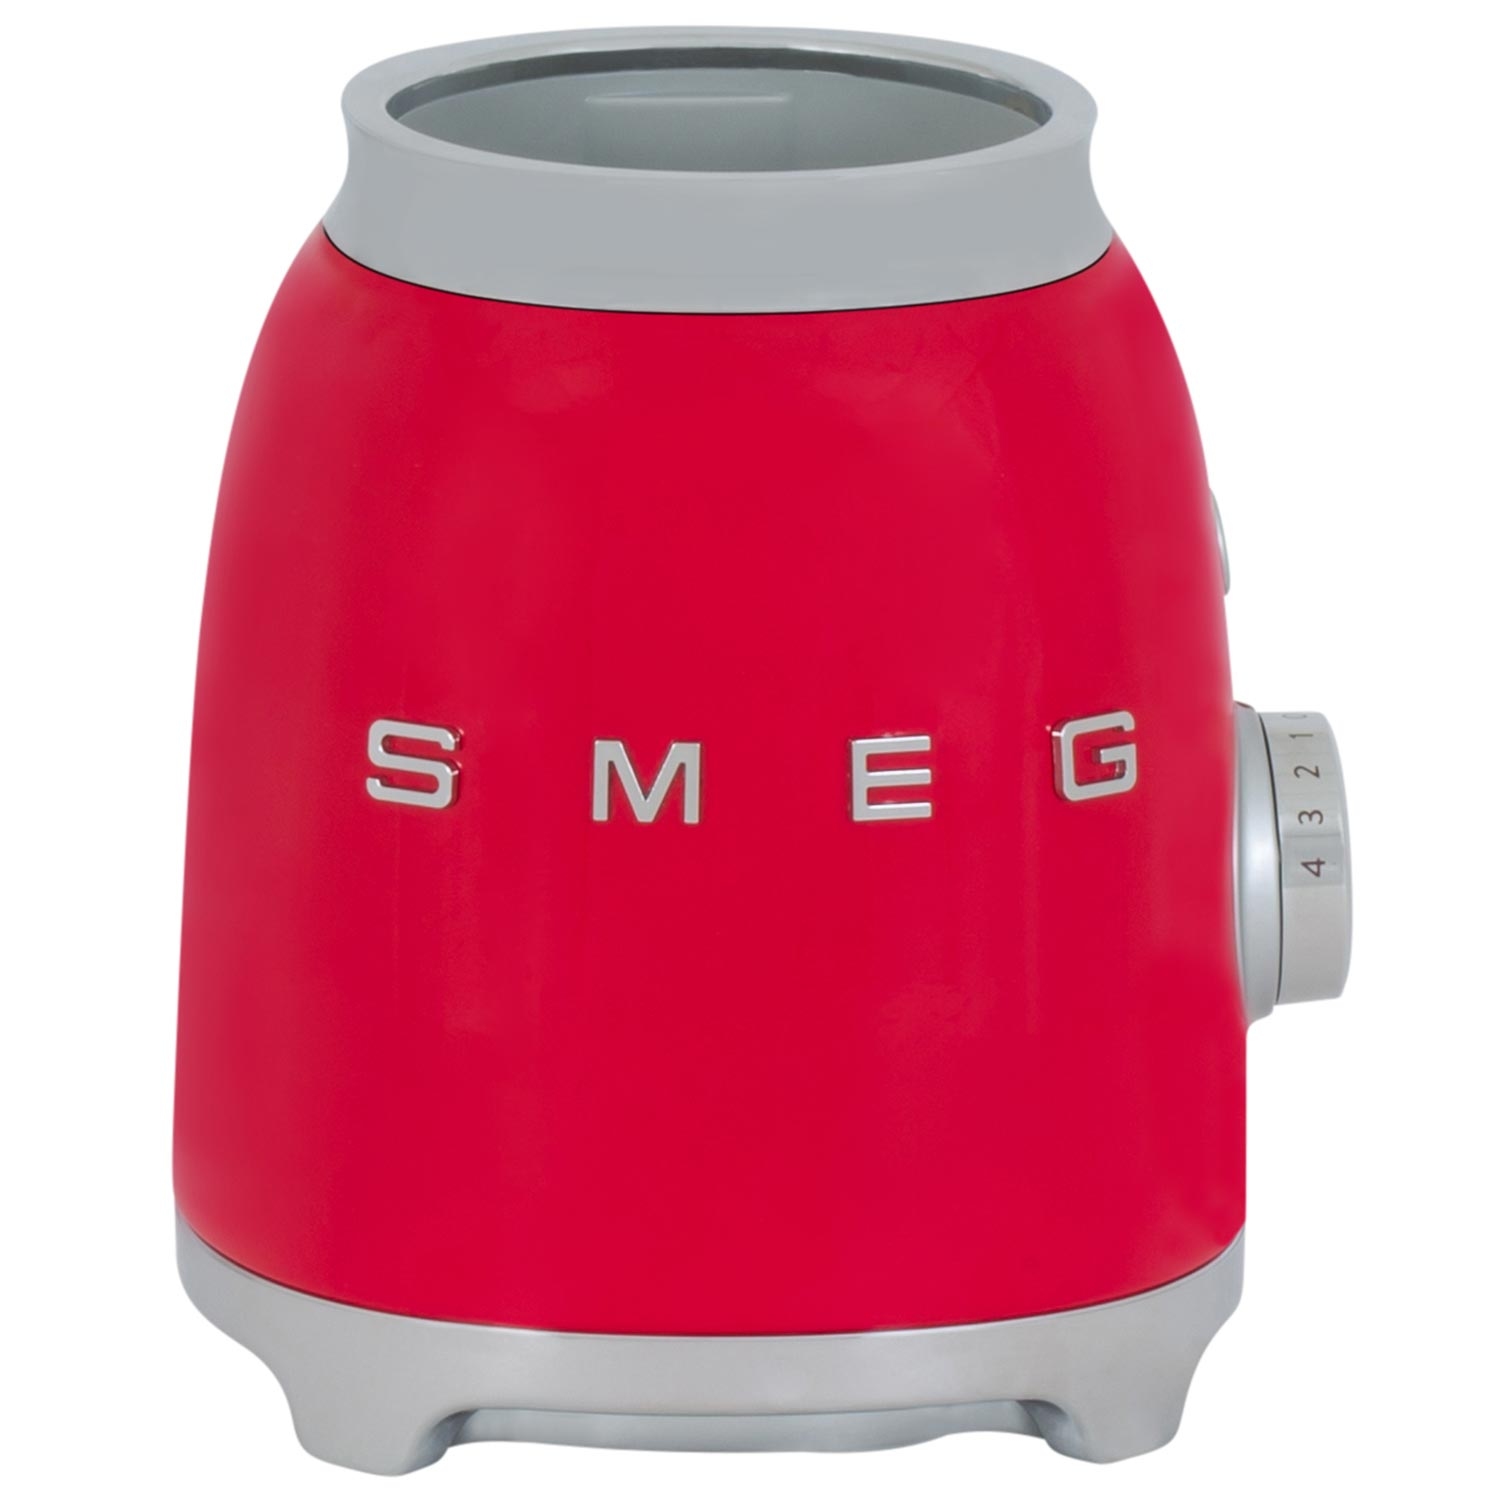 Smeg 50's Retro Style Blender - RED - 9